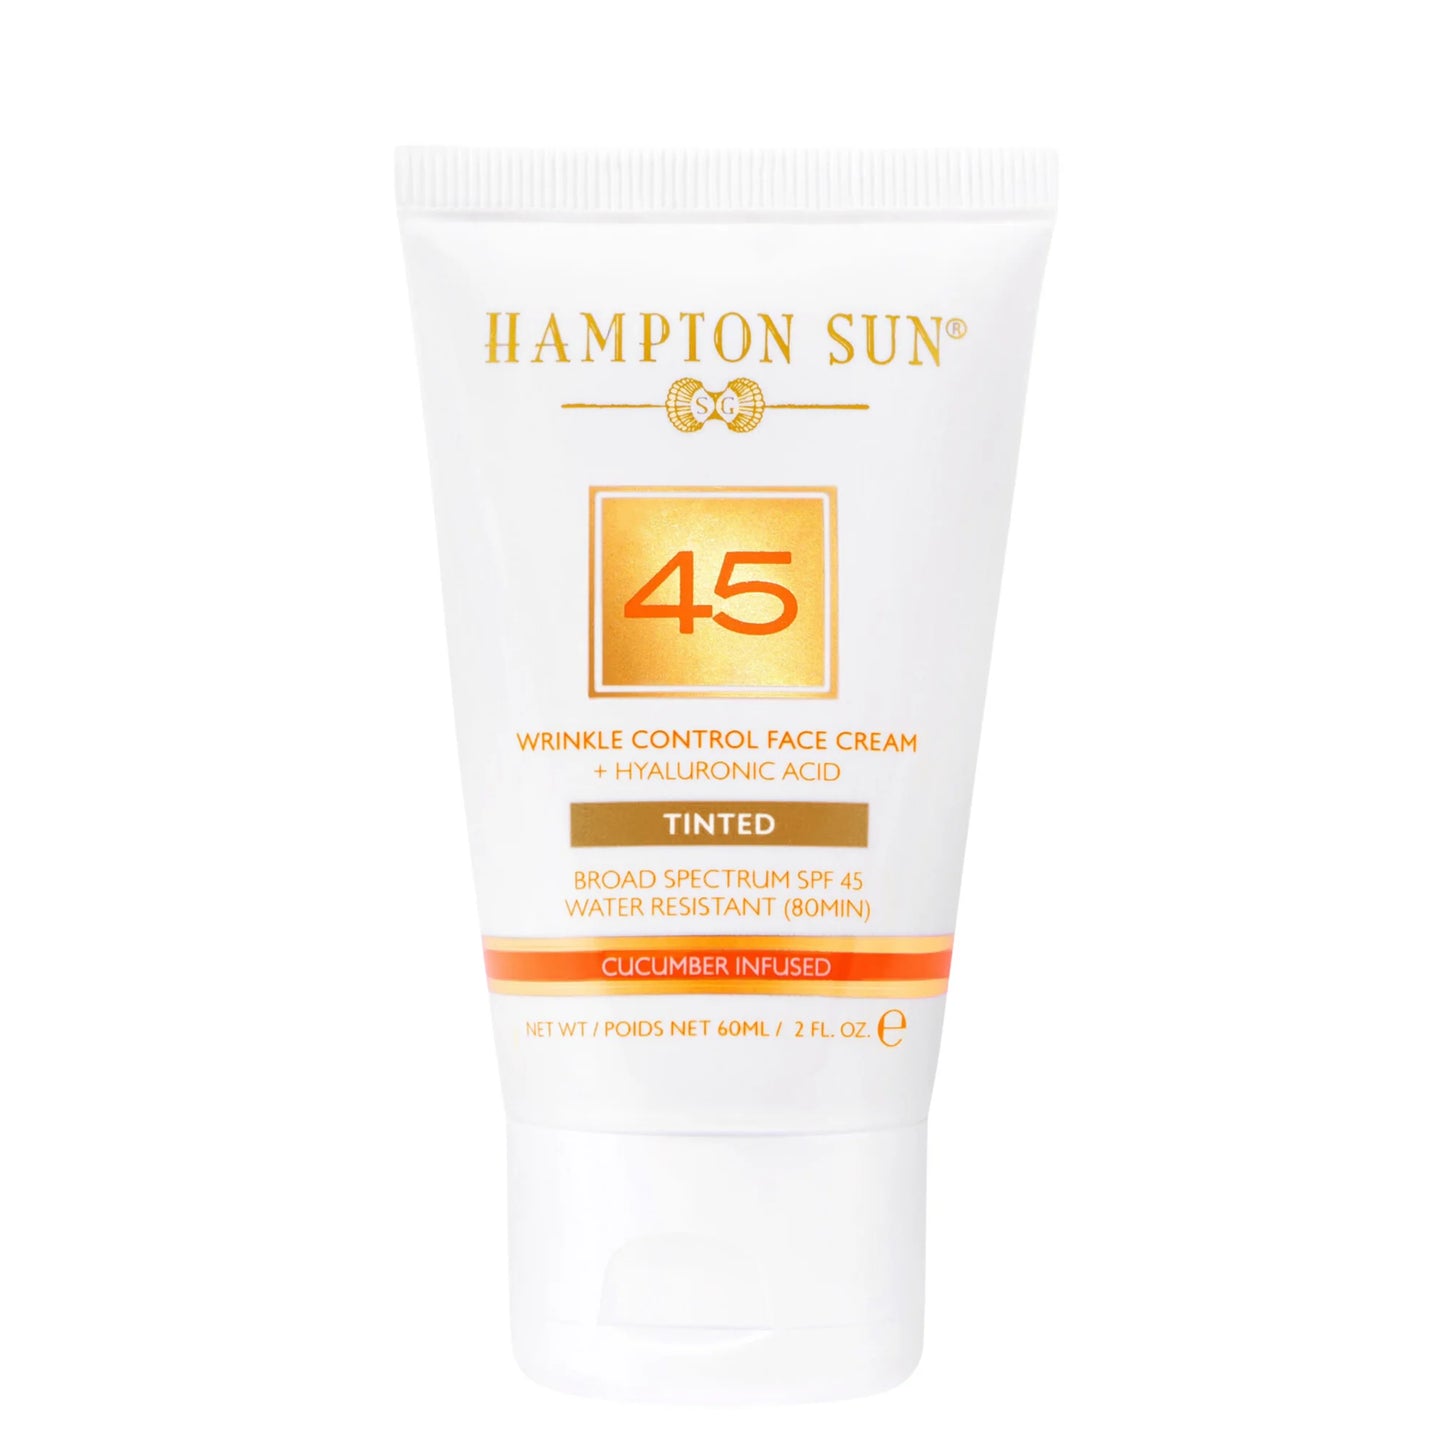 Sunscreen- Tinted SPF 45 Face Cream